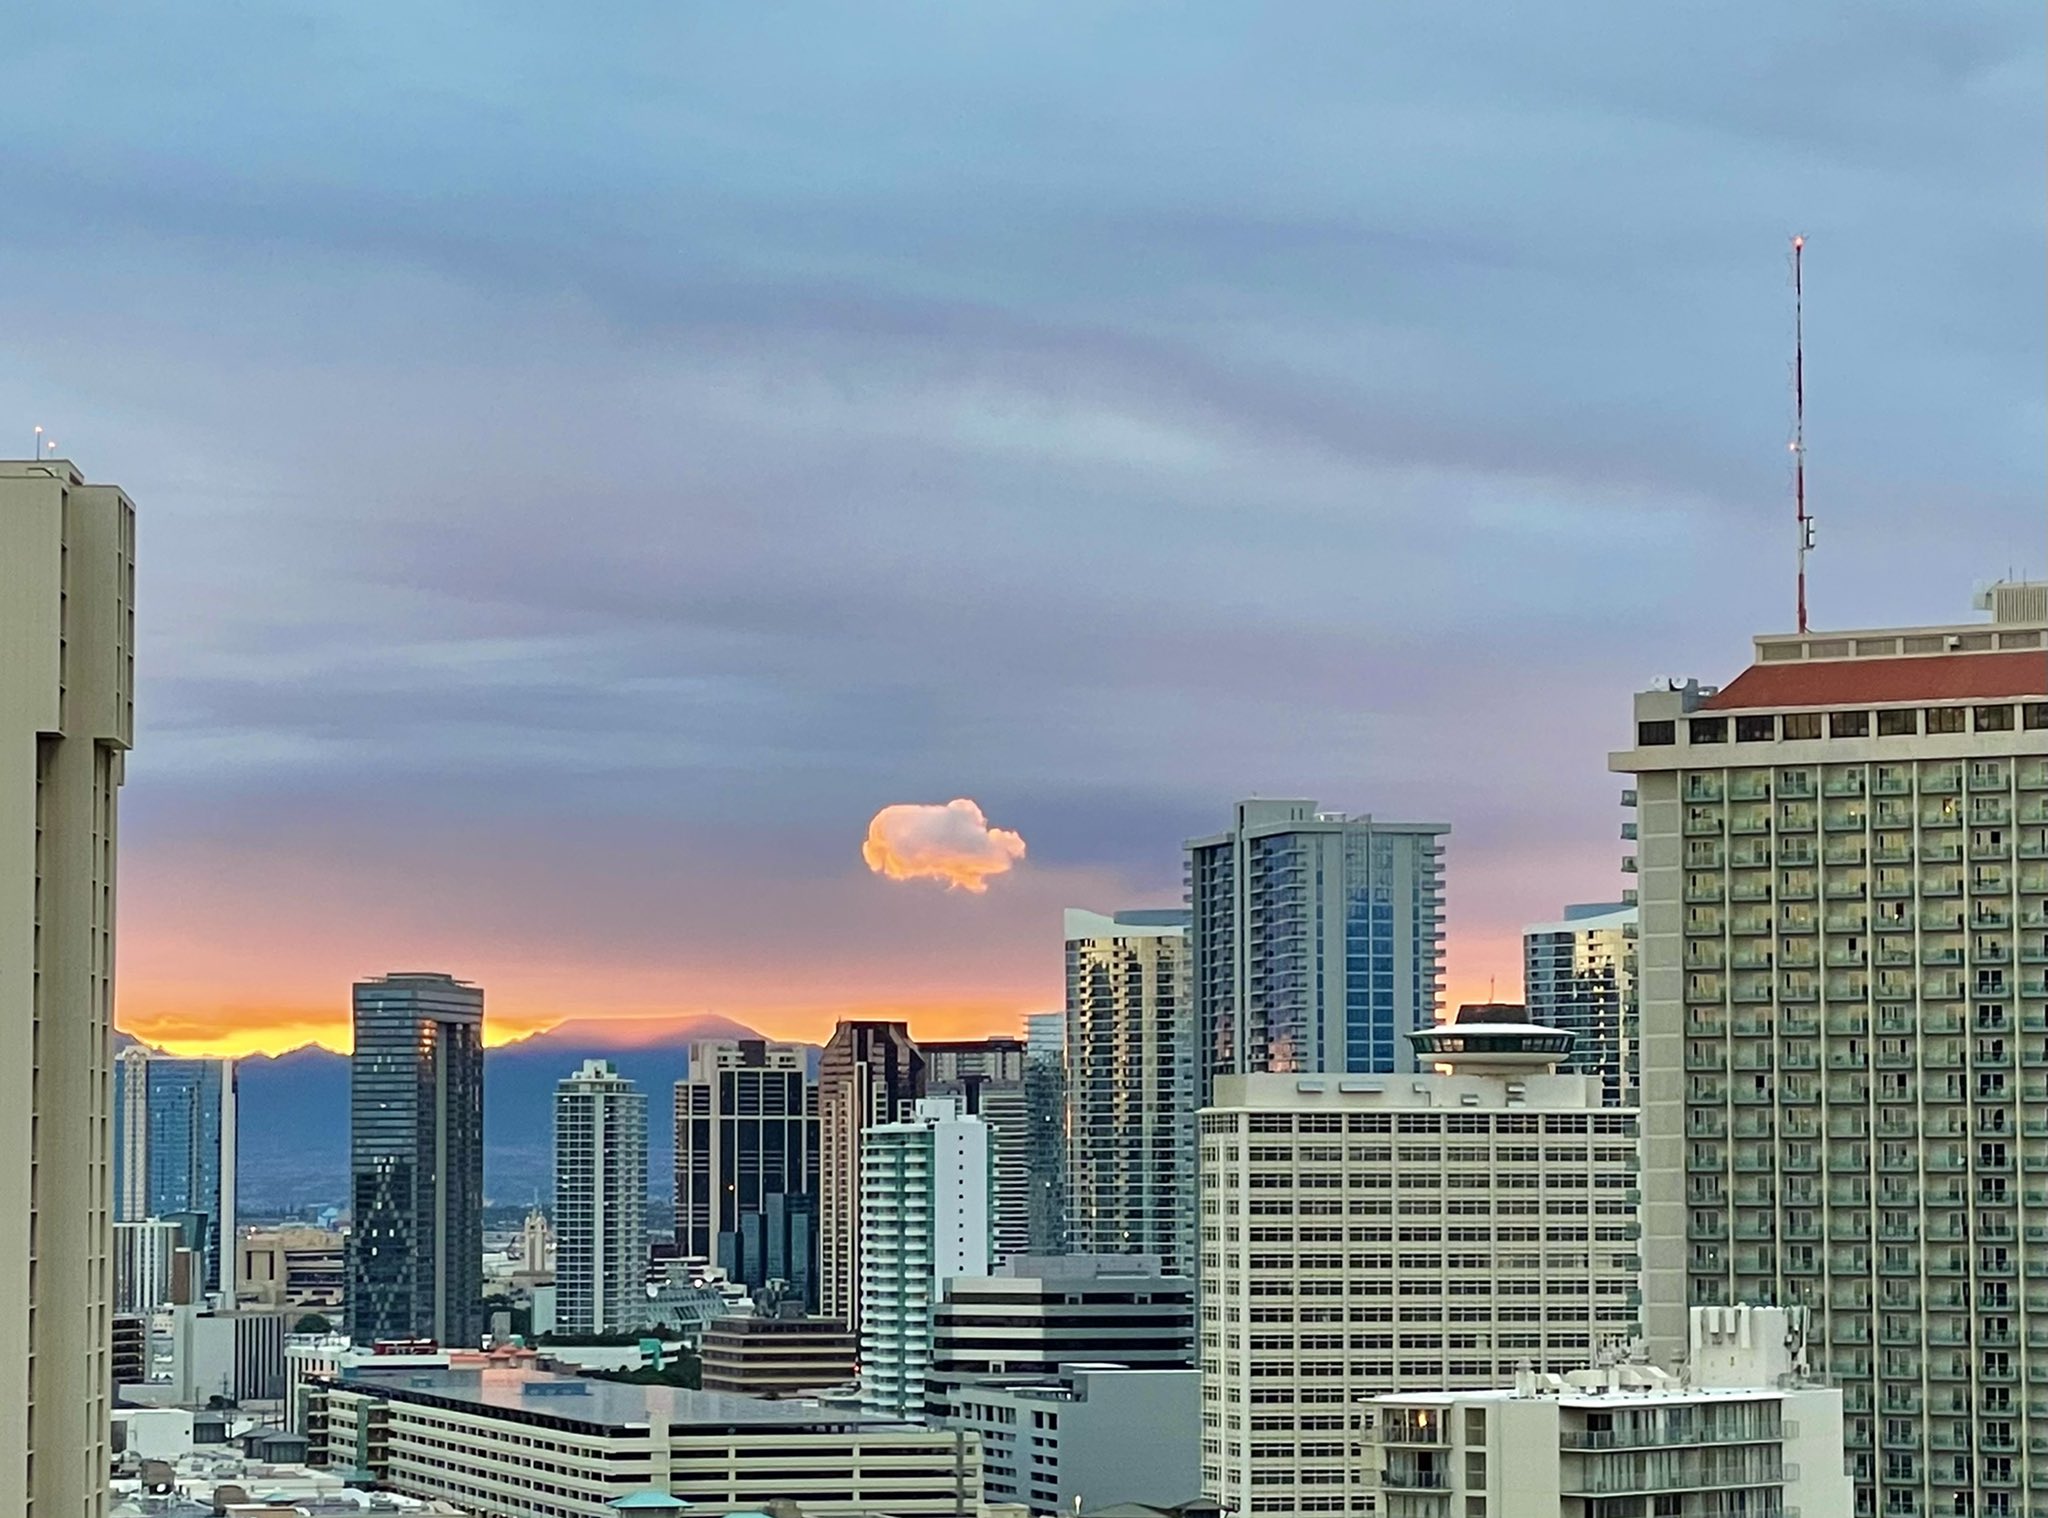 ぢゅんこ 昨日の夕方の雲が可愛かった Sunsetcloud Hawaiiview Hawaiilife 夕焼け雲 ラナイからの眺め ハワイの景色 ハワイ生活 ハワイ駐在妻 T Co Qmjuuzq6dt Twitter